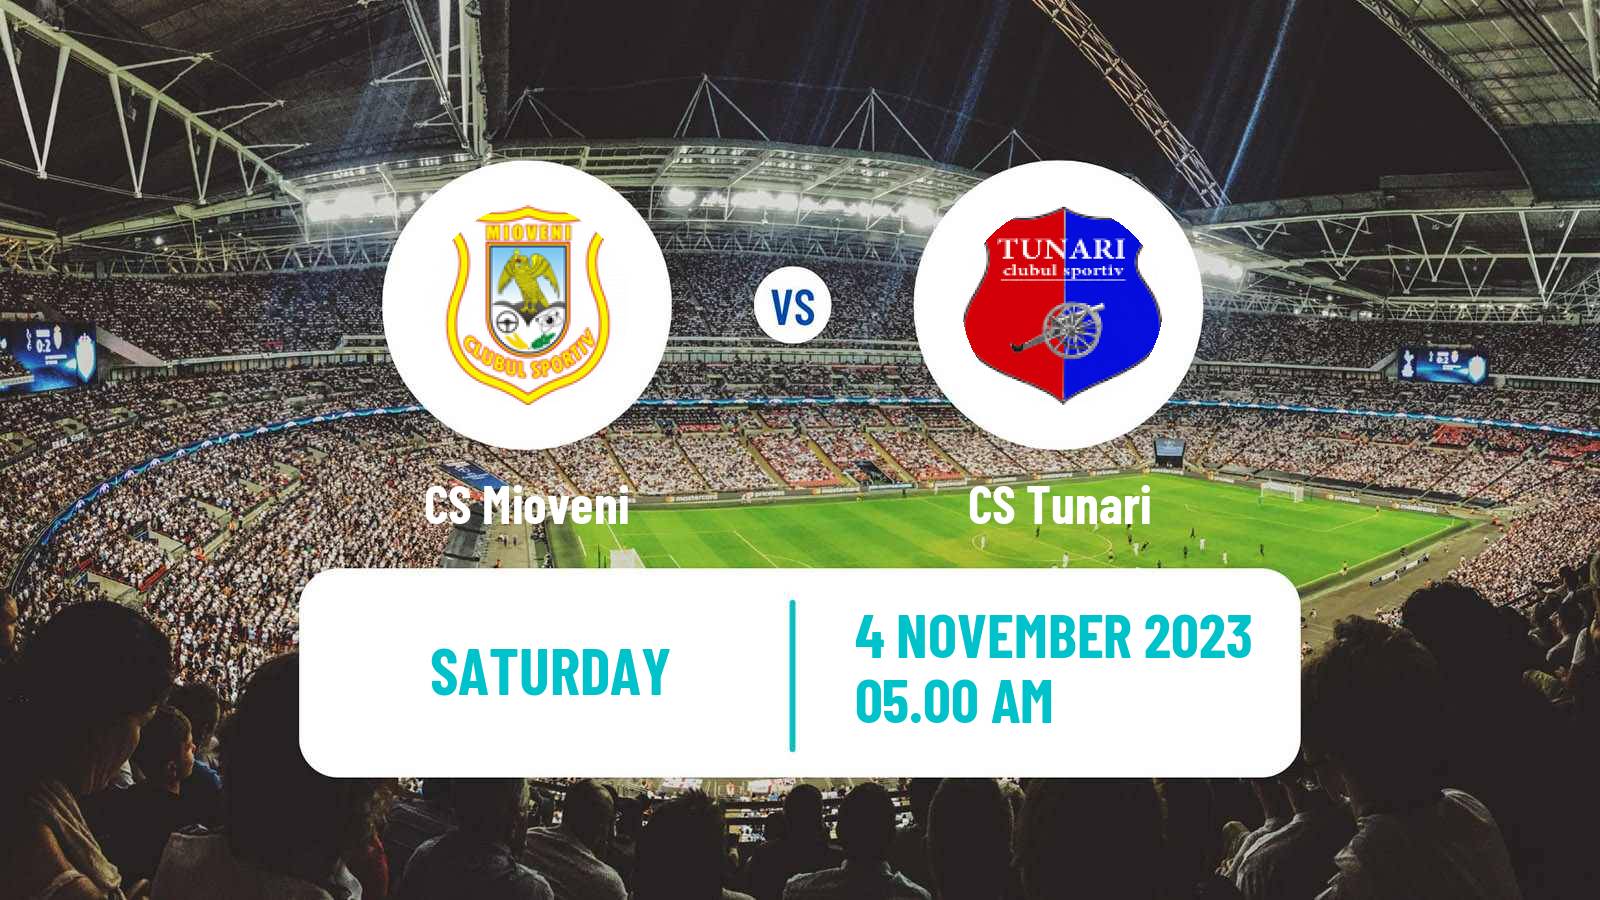 Soccer Romanian Division 2 Mioveni - Tunari